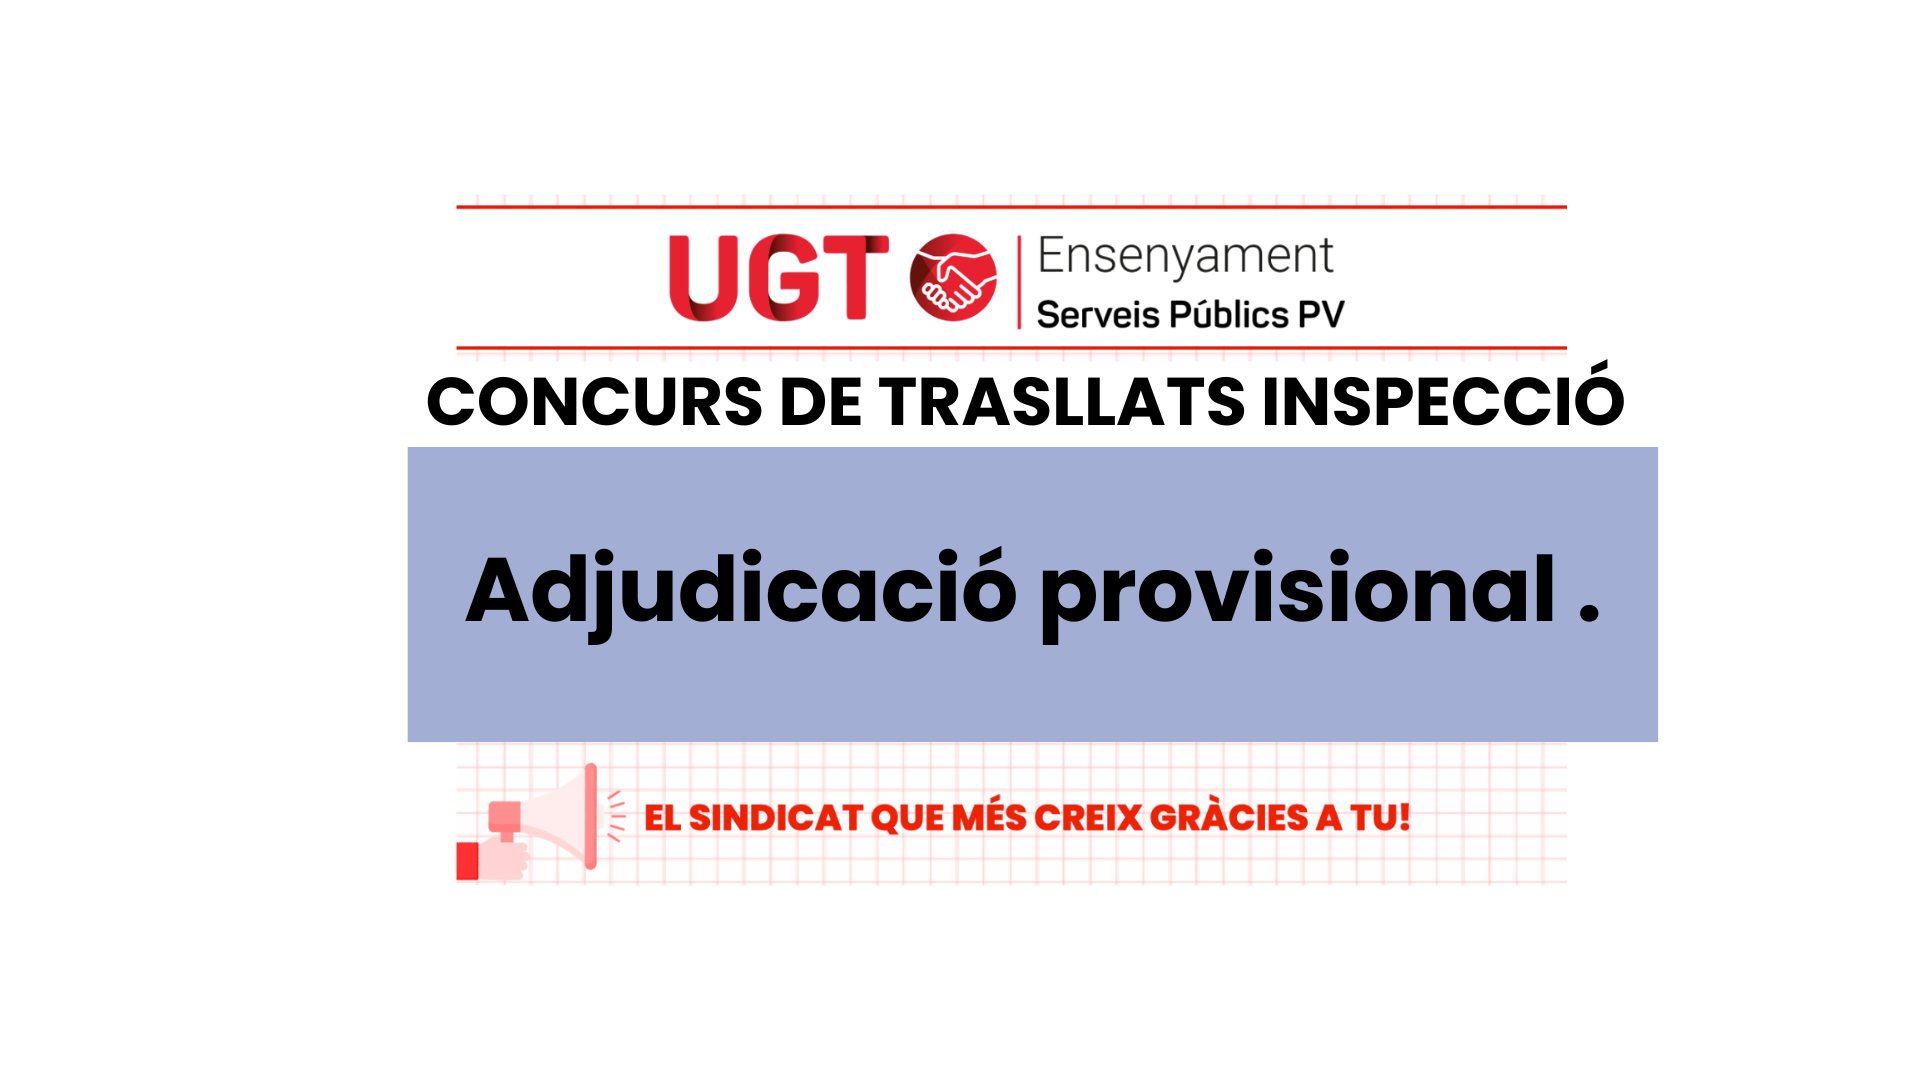 UGT INFORMA: Adjudicació provisional  concurs de trasllats del cos d’inspectors i inspectores.